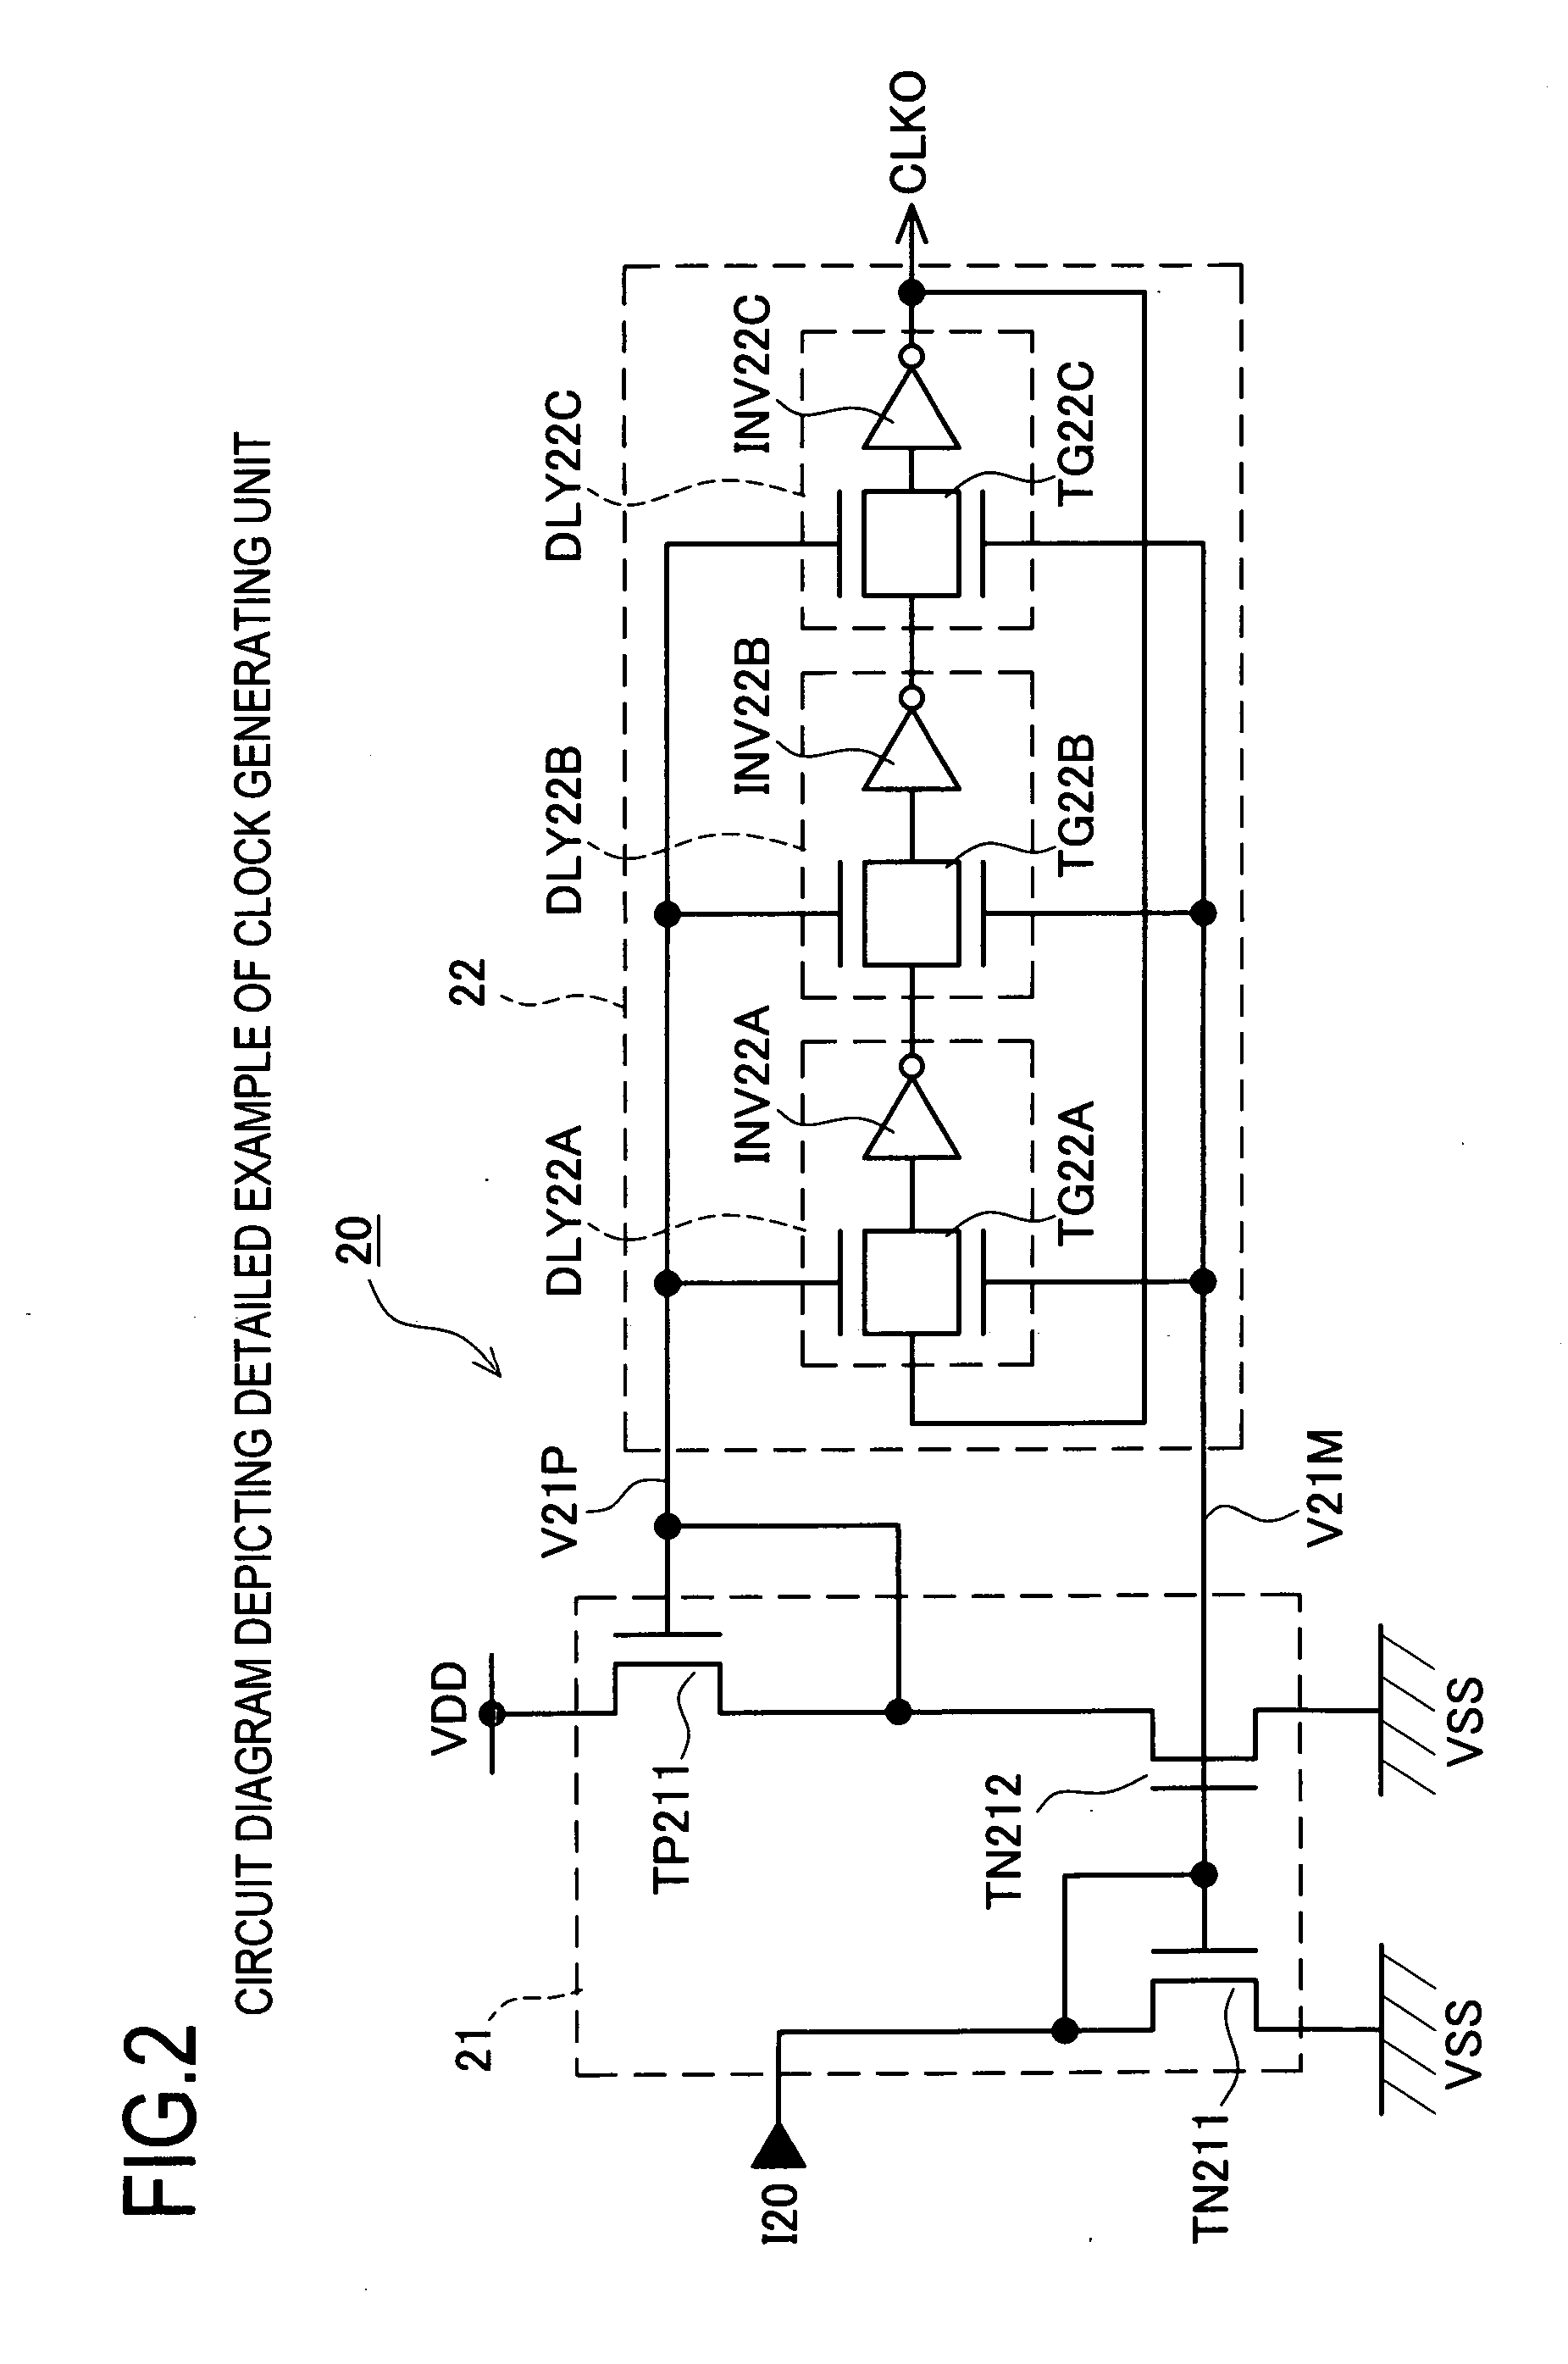 Clock generating circuit and clock generating method